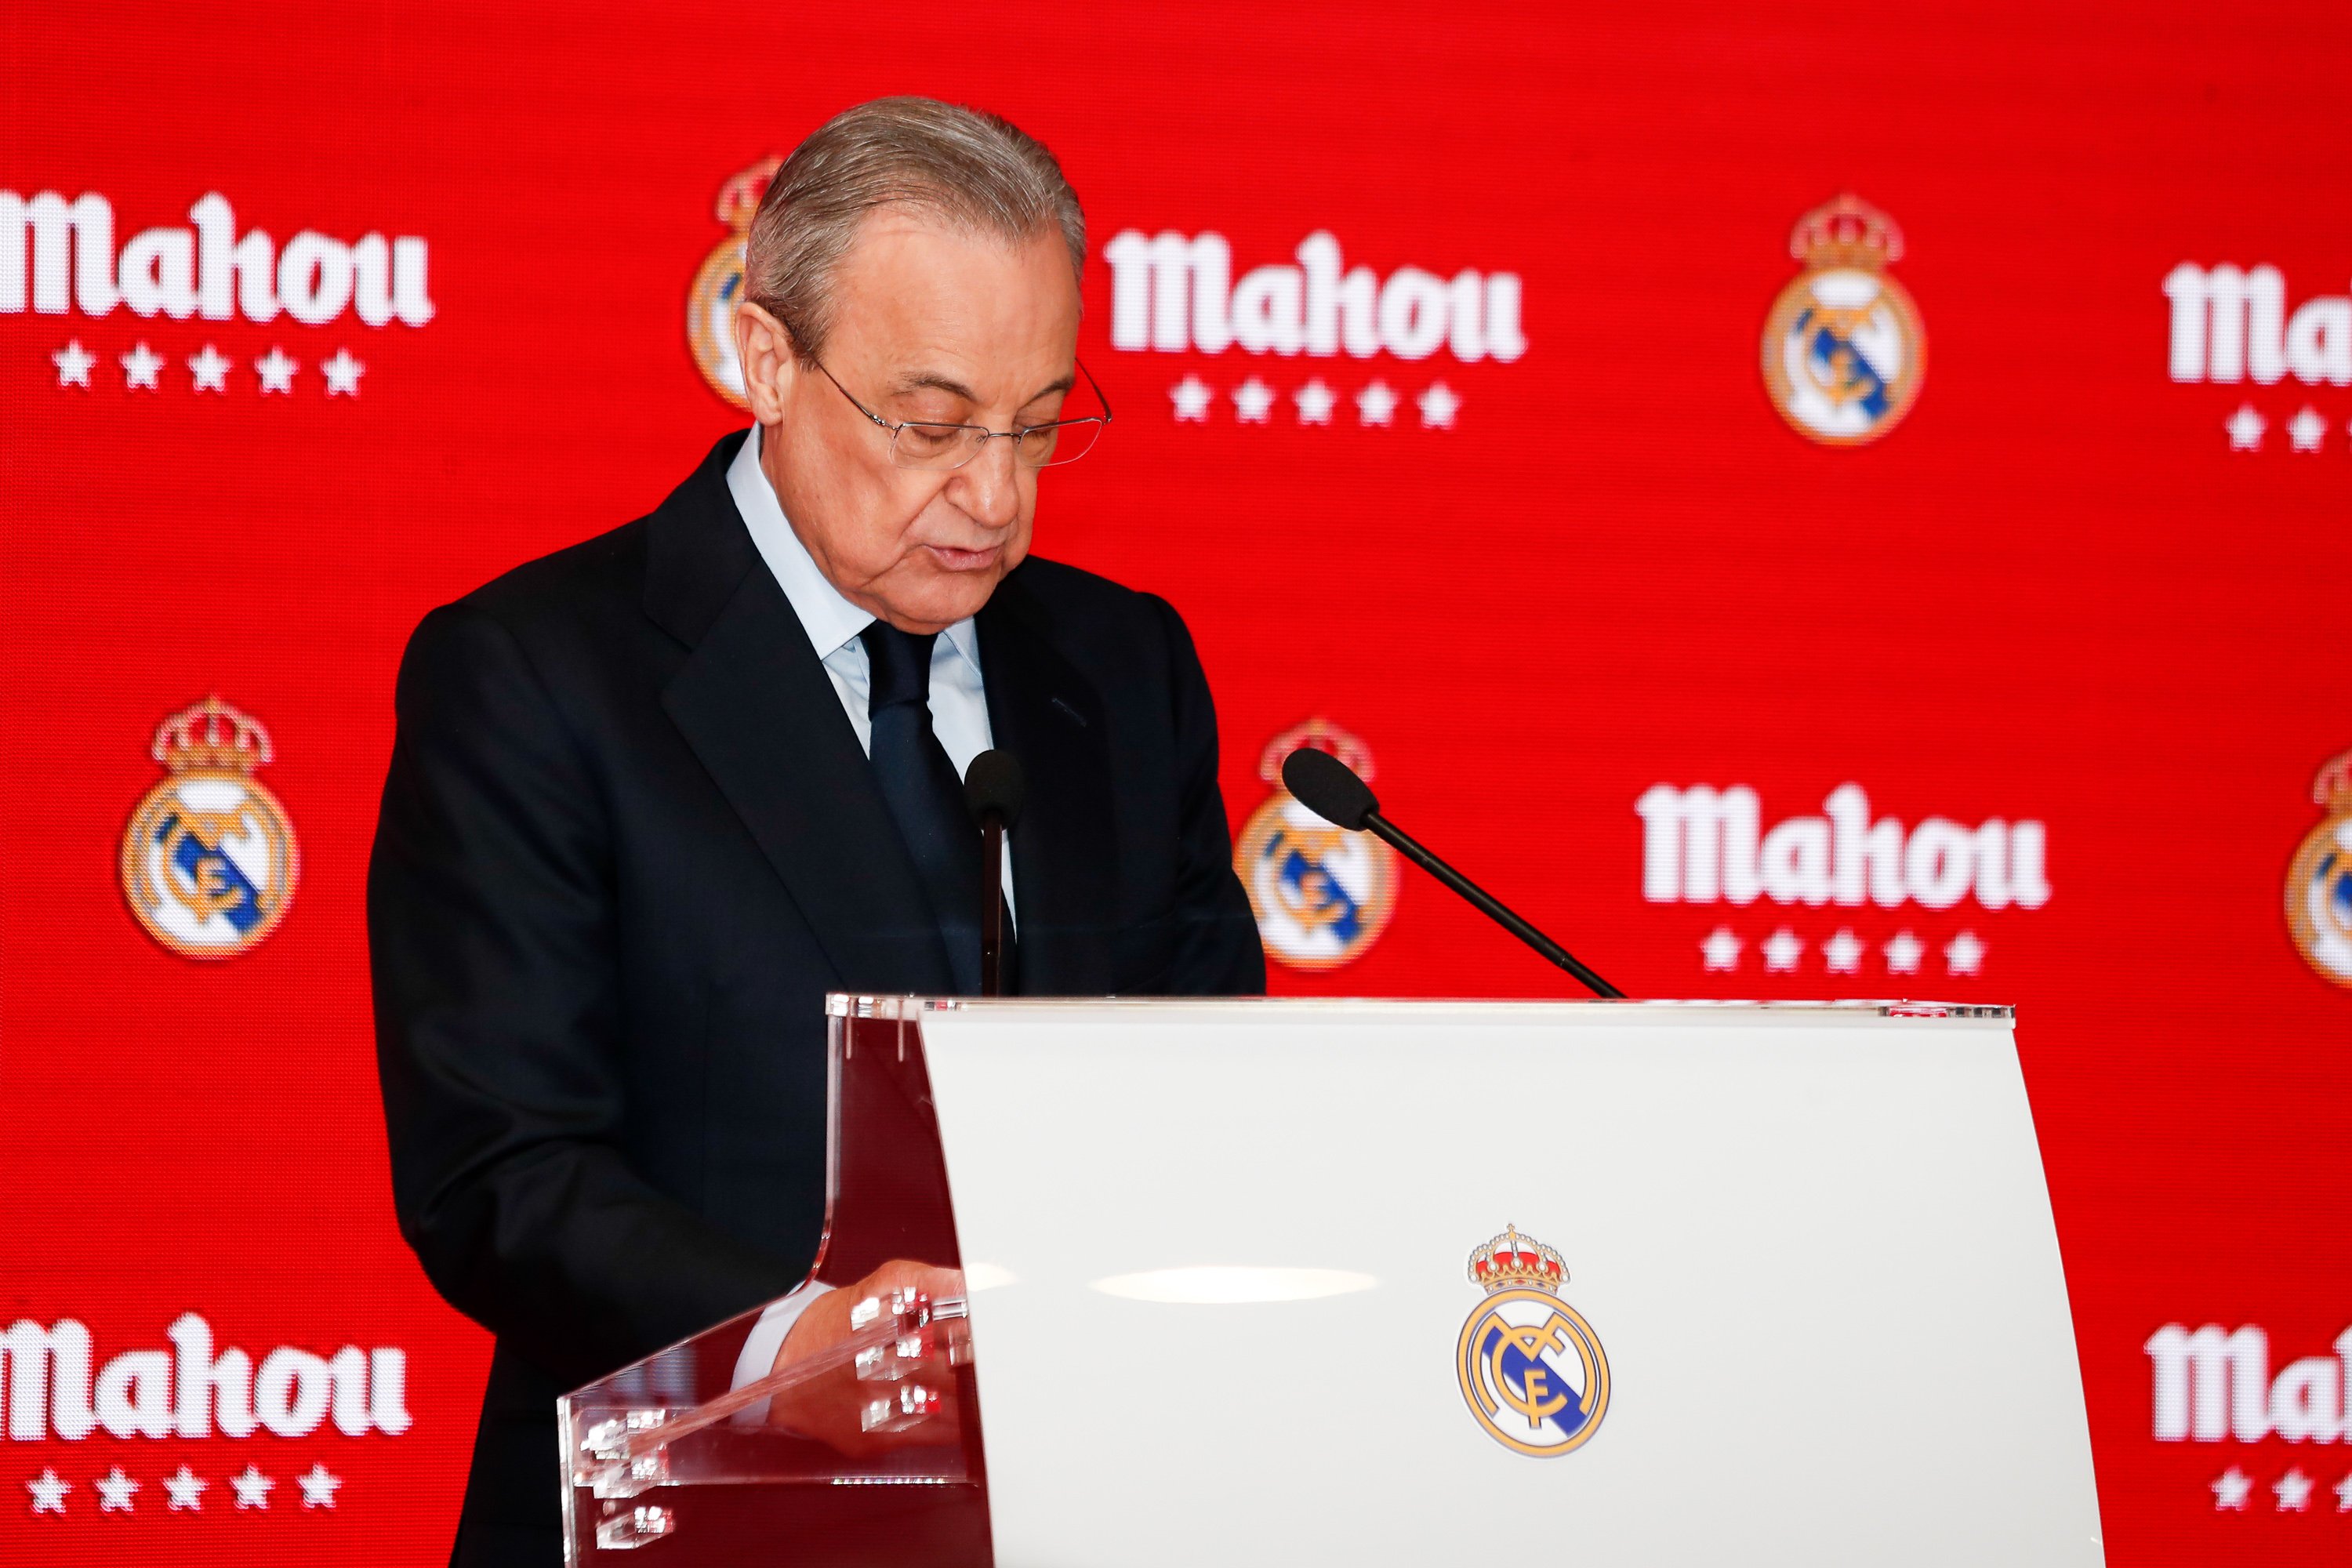 Rebutja el PSG perquè no vol trair Florentino Pérez i vol penjar les botes al Reial Madrid